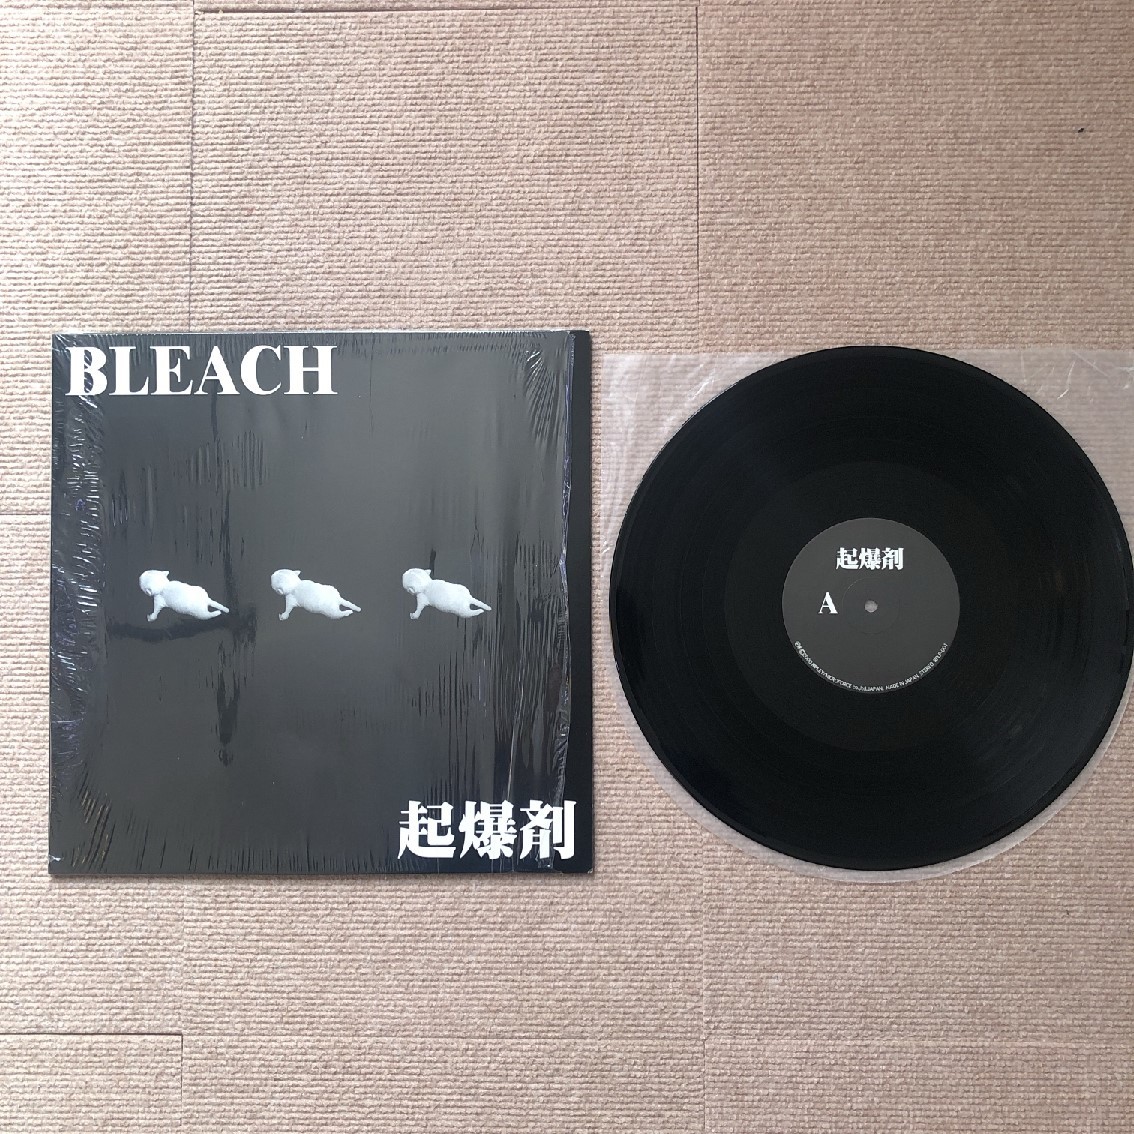 傷なし美盤 ブリーチ Bleach 2000年 LPレコード 起爆剤 Kibakuzai オリジナルリリース盤 Japanese punk 沖縄インディーズ_画像5